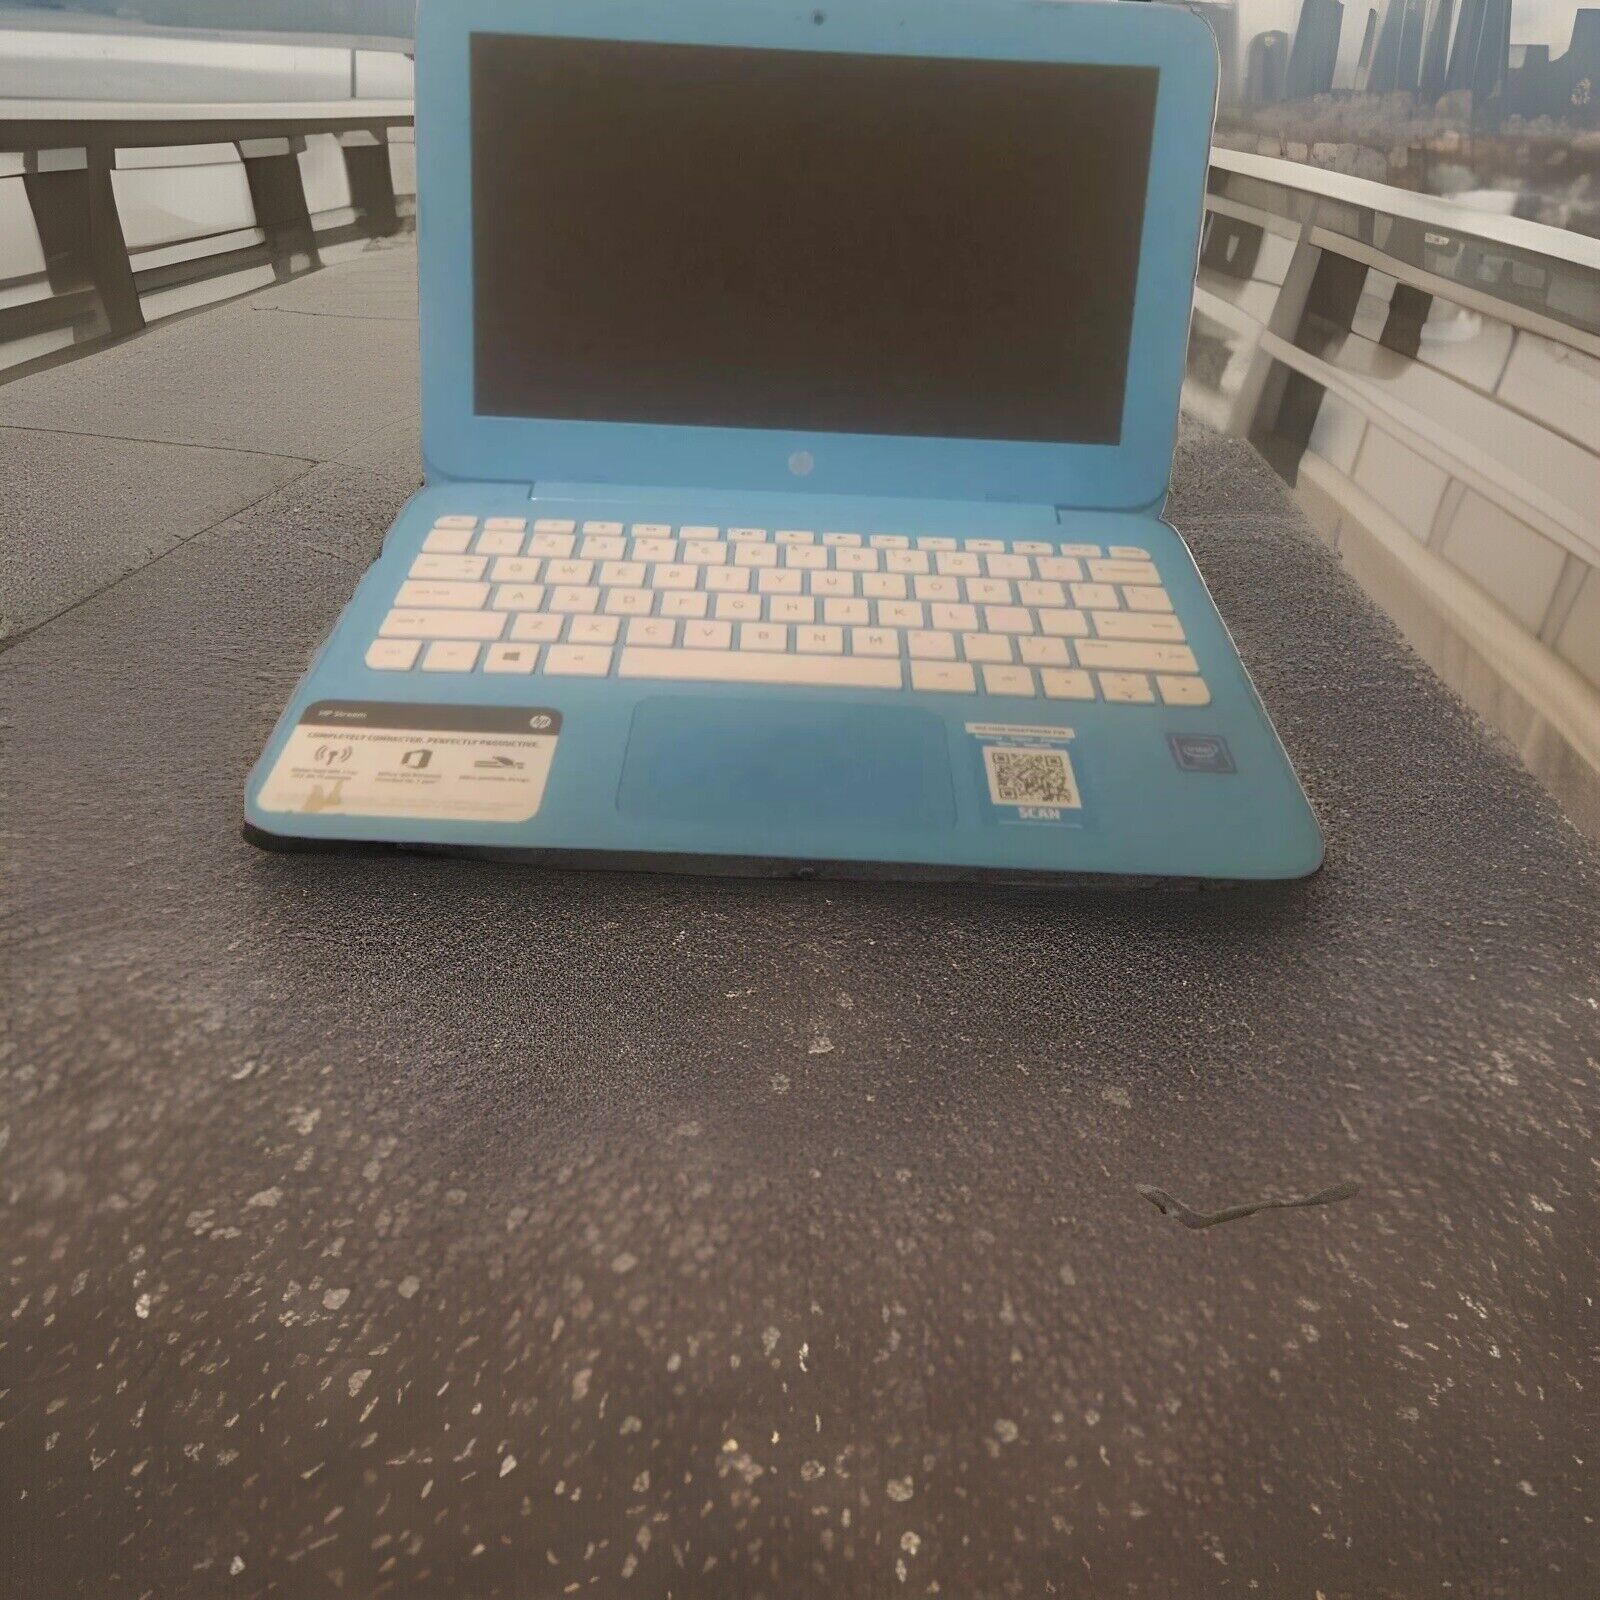 HP Stream 14-cb011wm 14 inch (32GB, Intel Celeron N3060, 4GB) Laptop - Blue -...